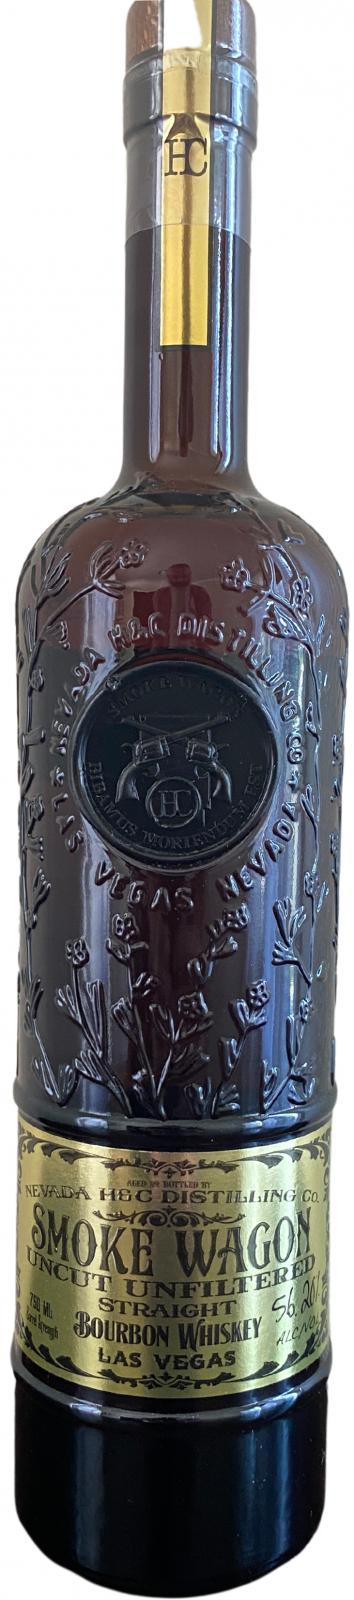 Smoke Wagon Straight Bourbon Whisky New Charred American Oak Batch 63 56.2% 750ml